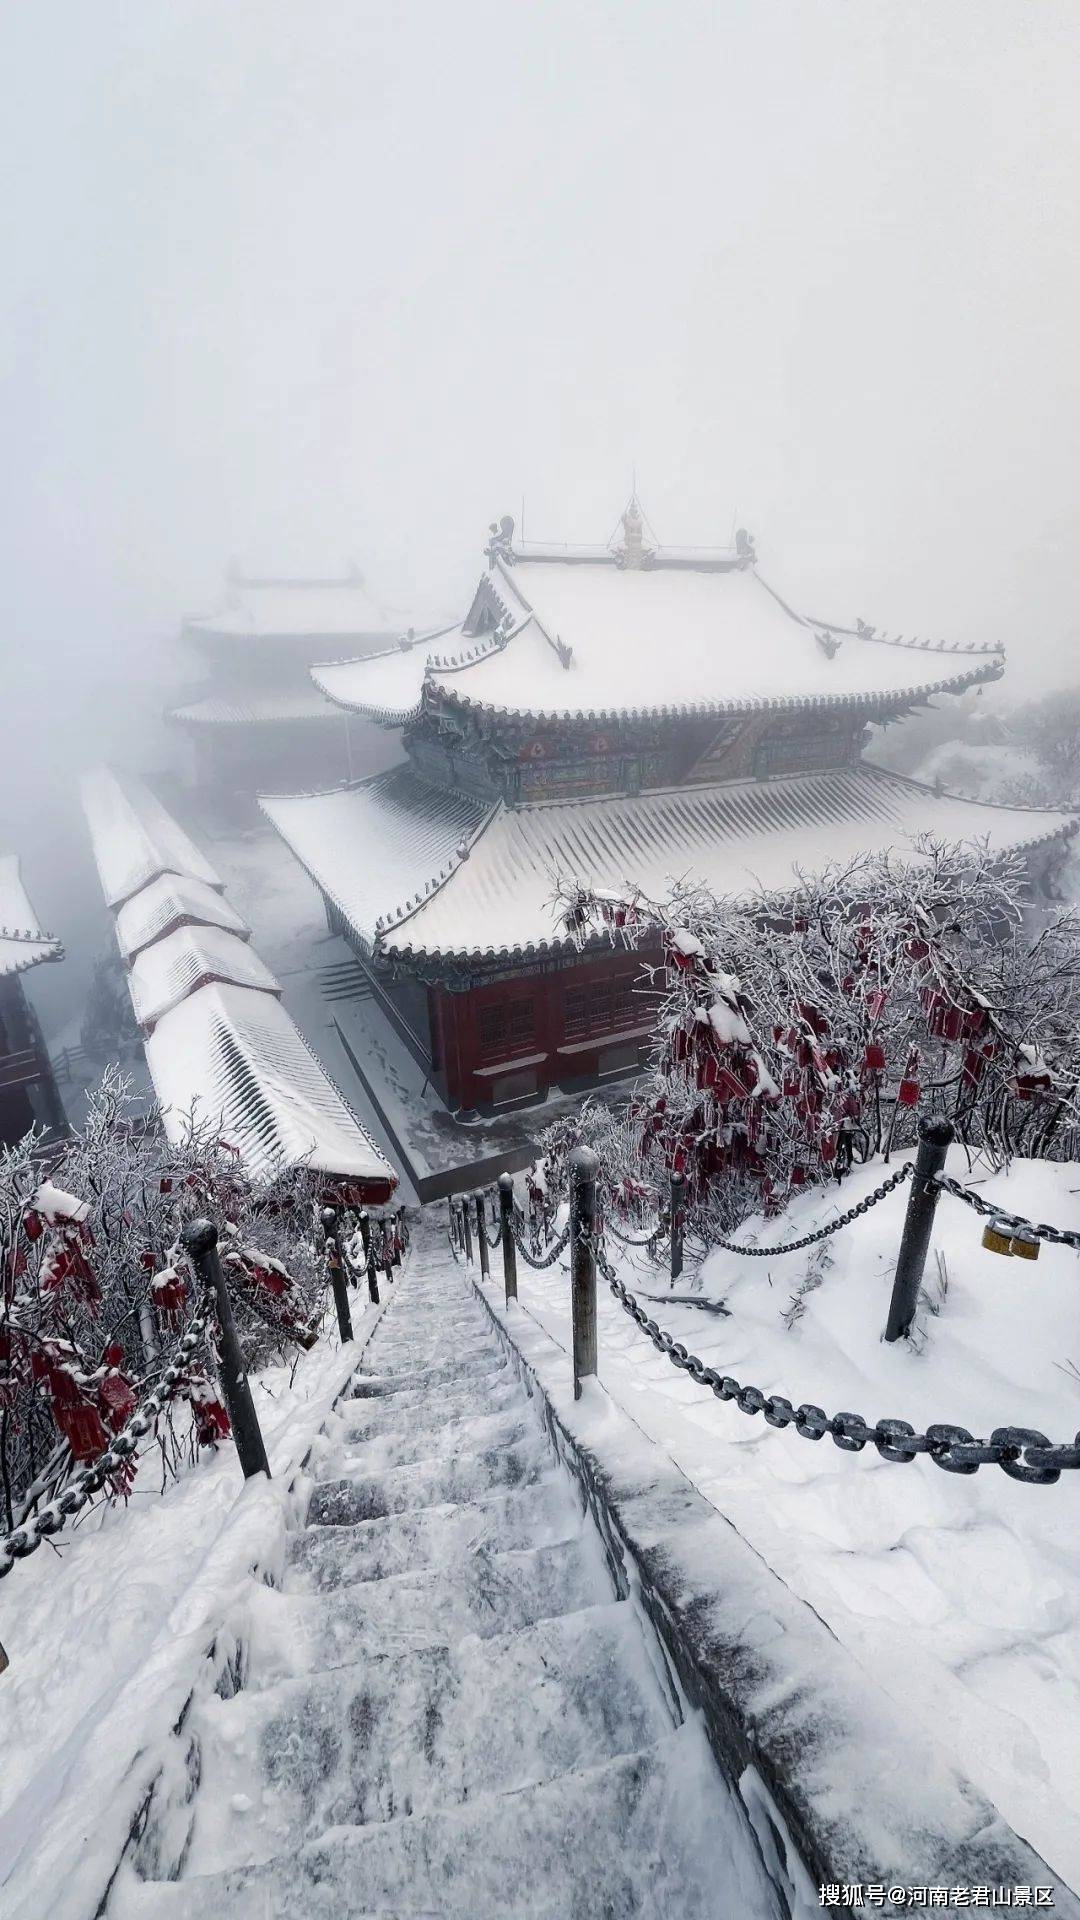 老君山最新雪景美图已生成 可以当壁纸哟!